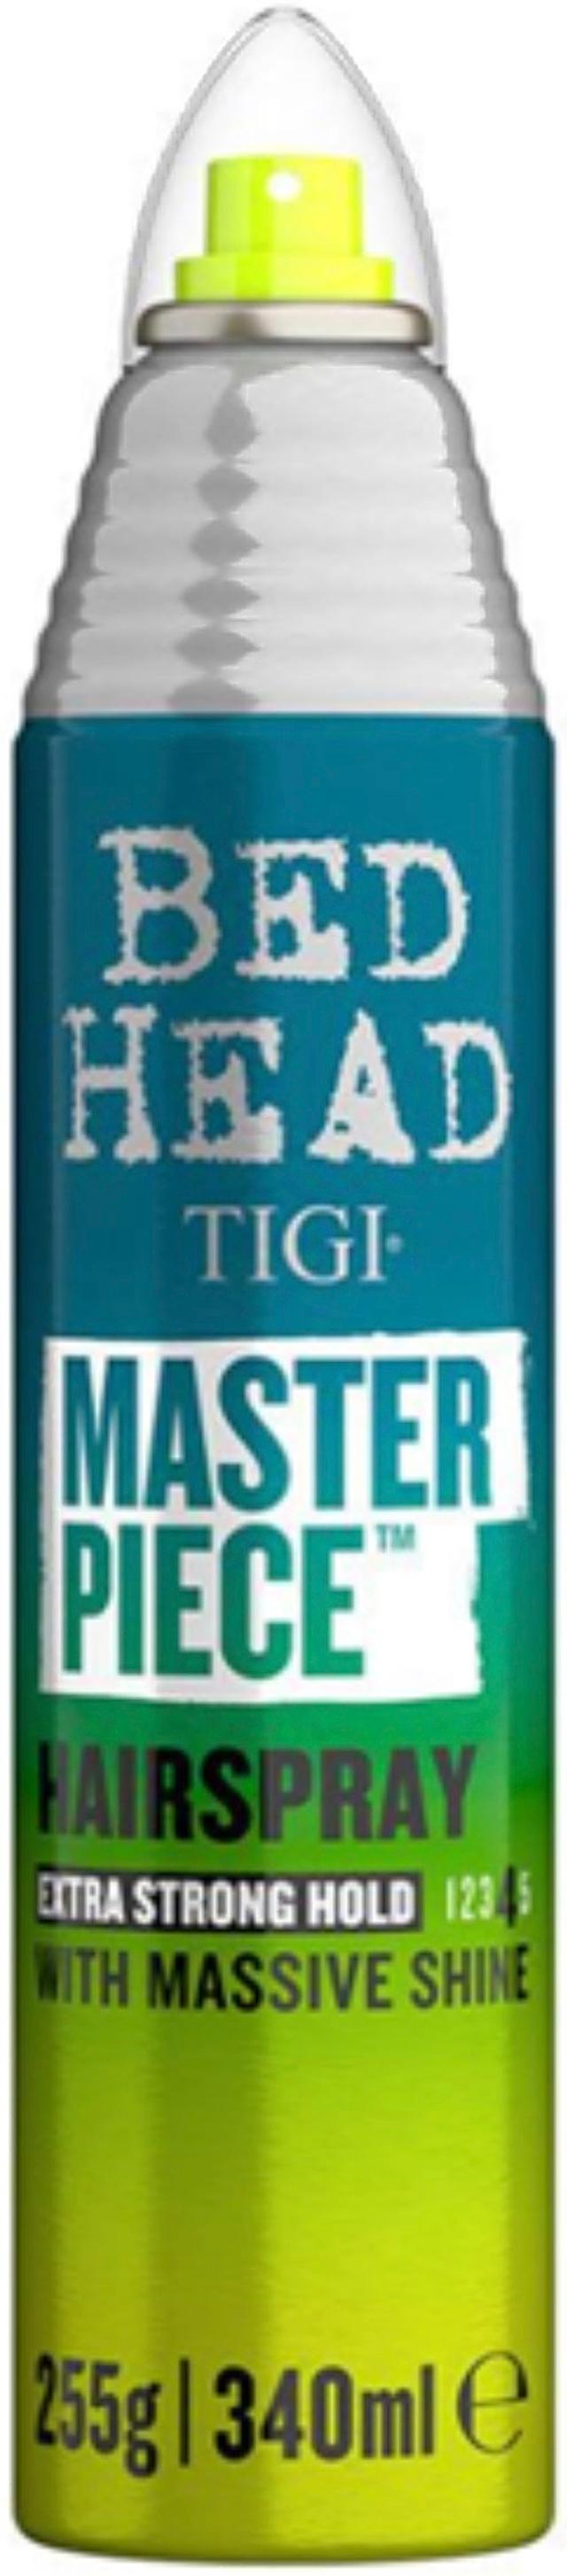 Tigi Bed Head 340ml Masterpiece kiiltoa tuova hiuskiinne